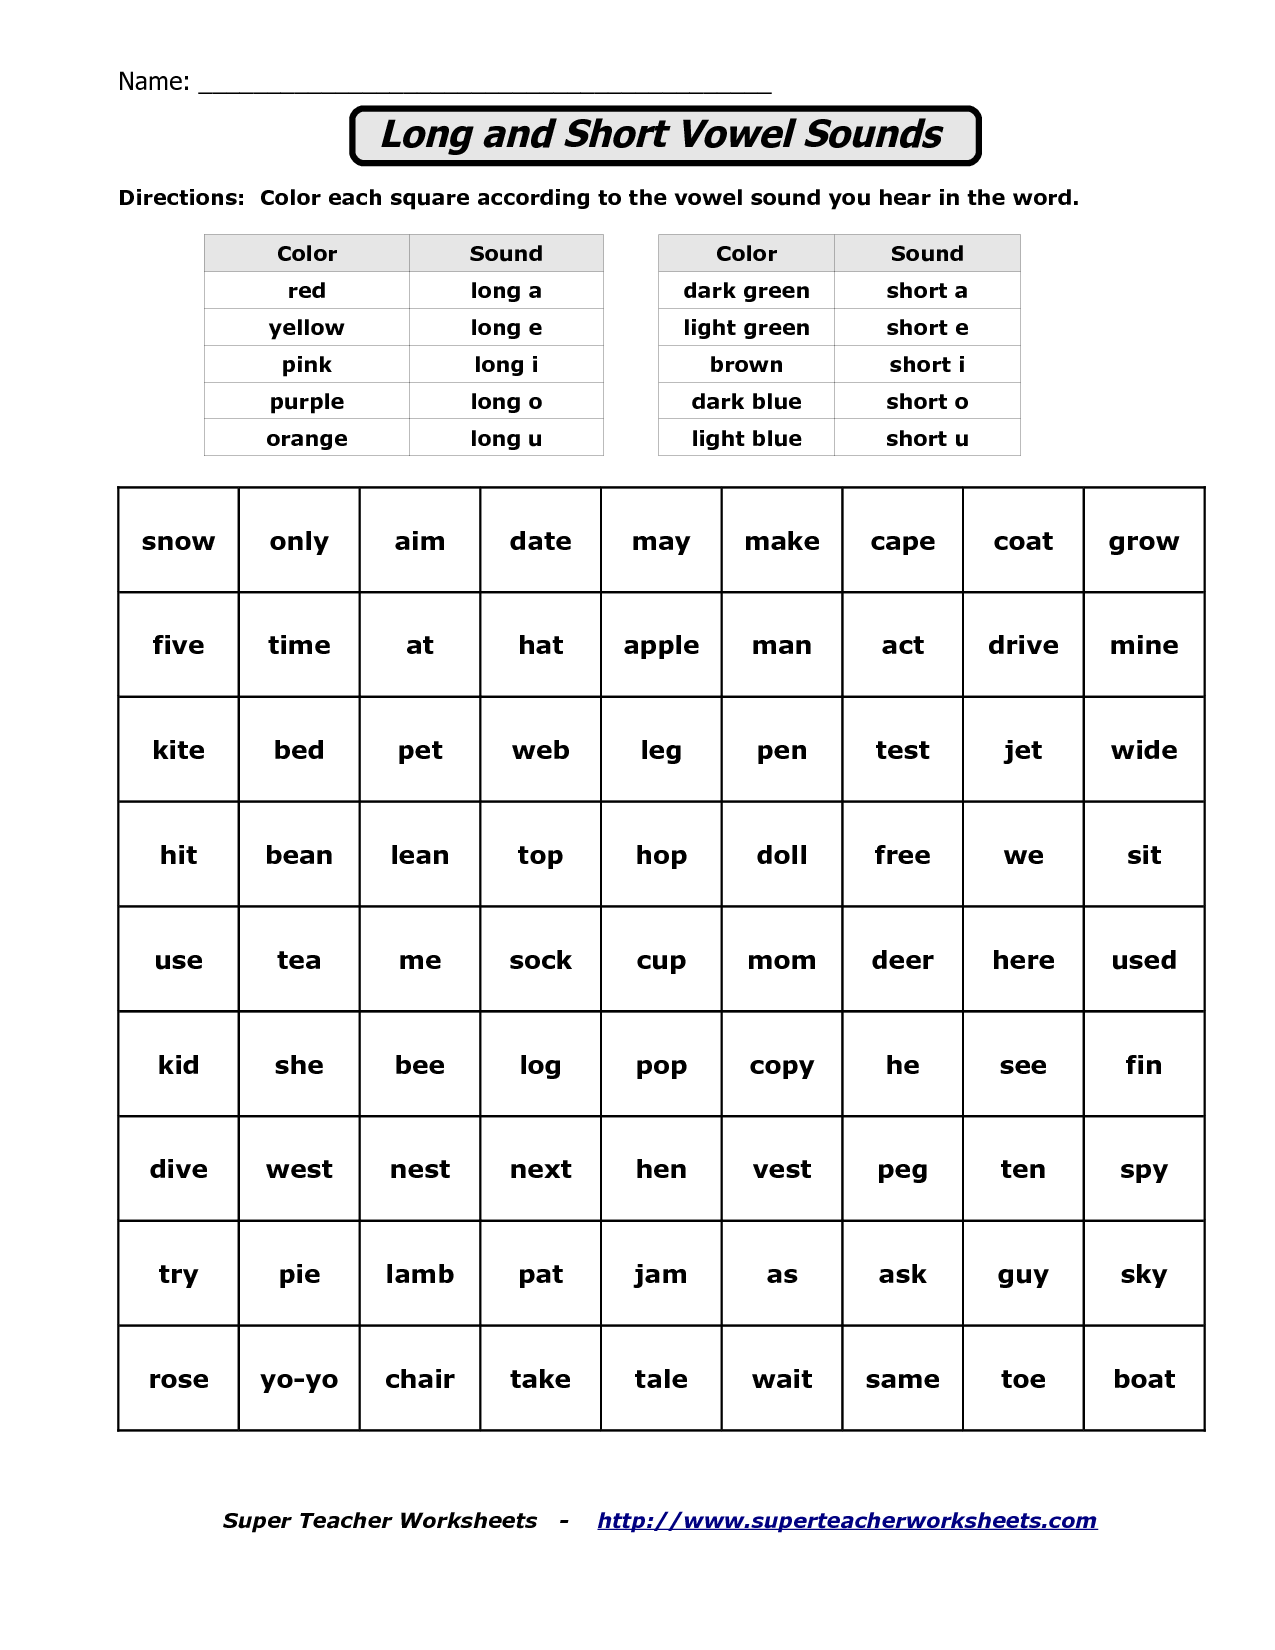 Long Vowel Sounds Worksheets Image